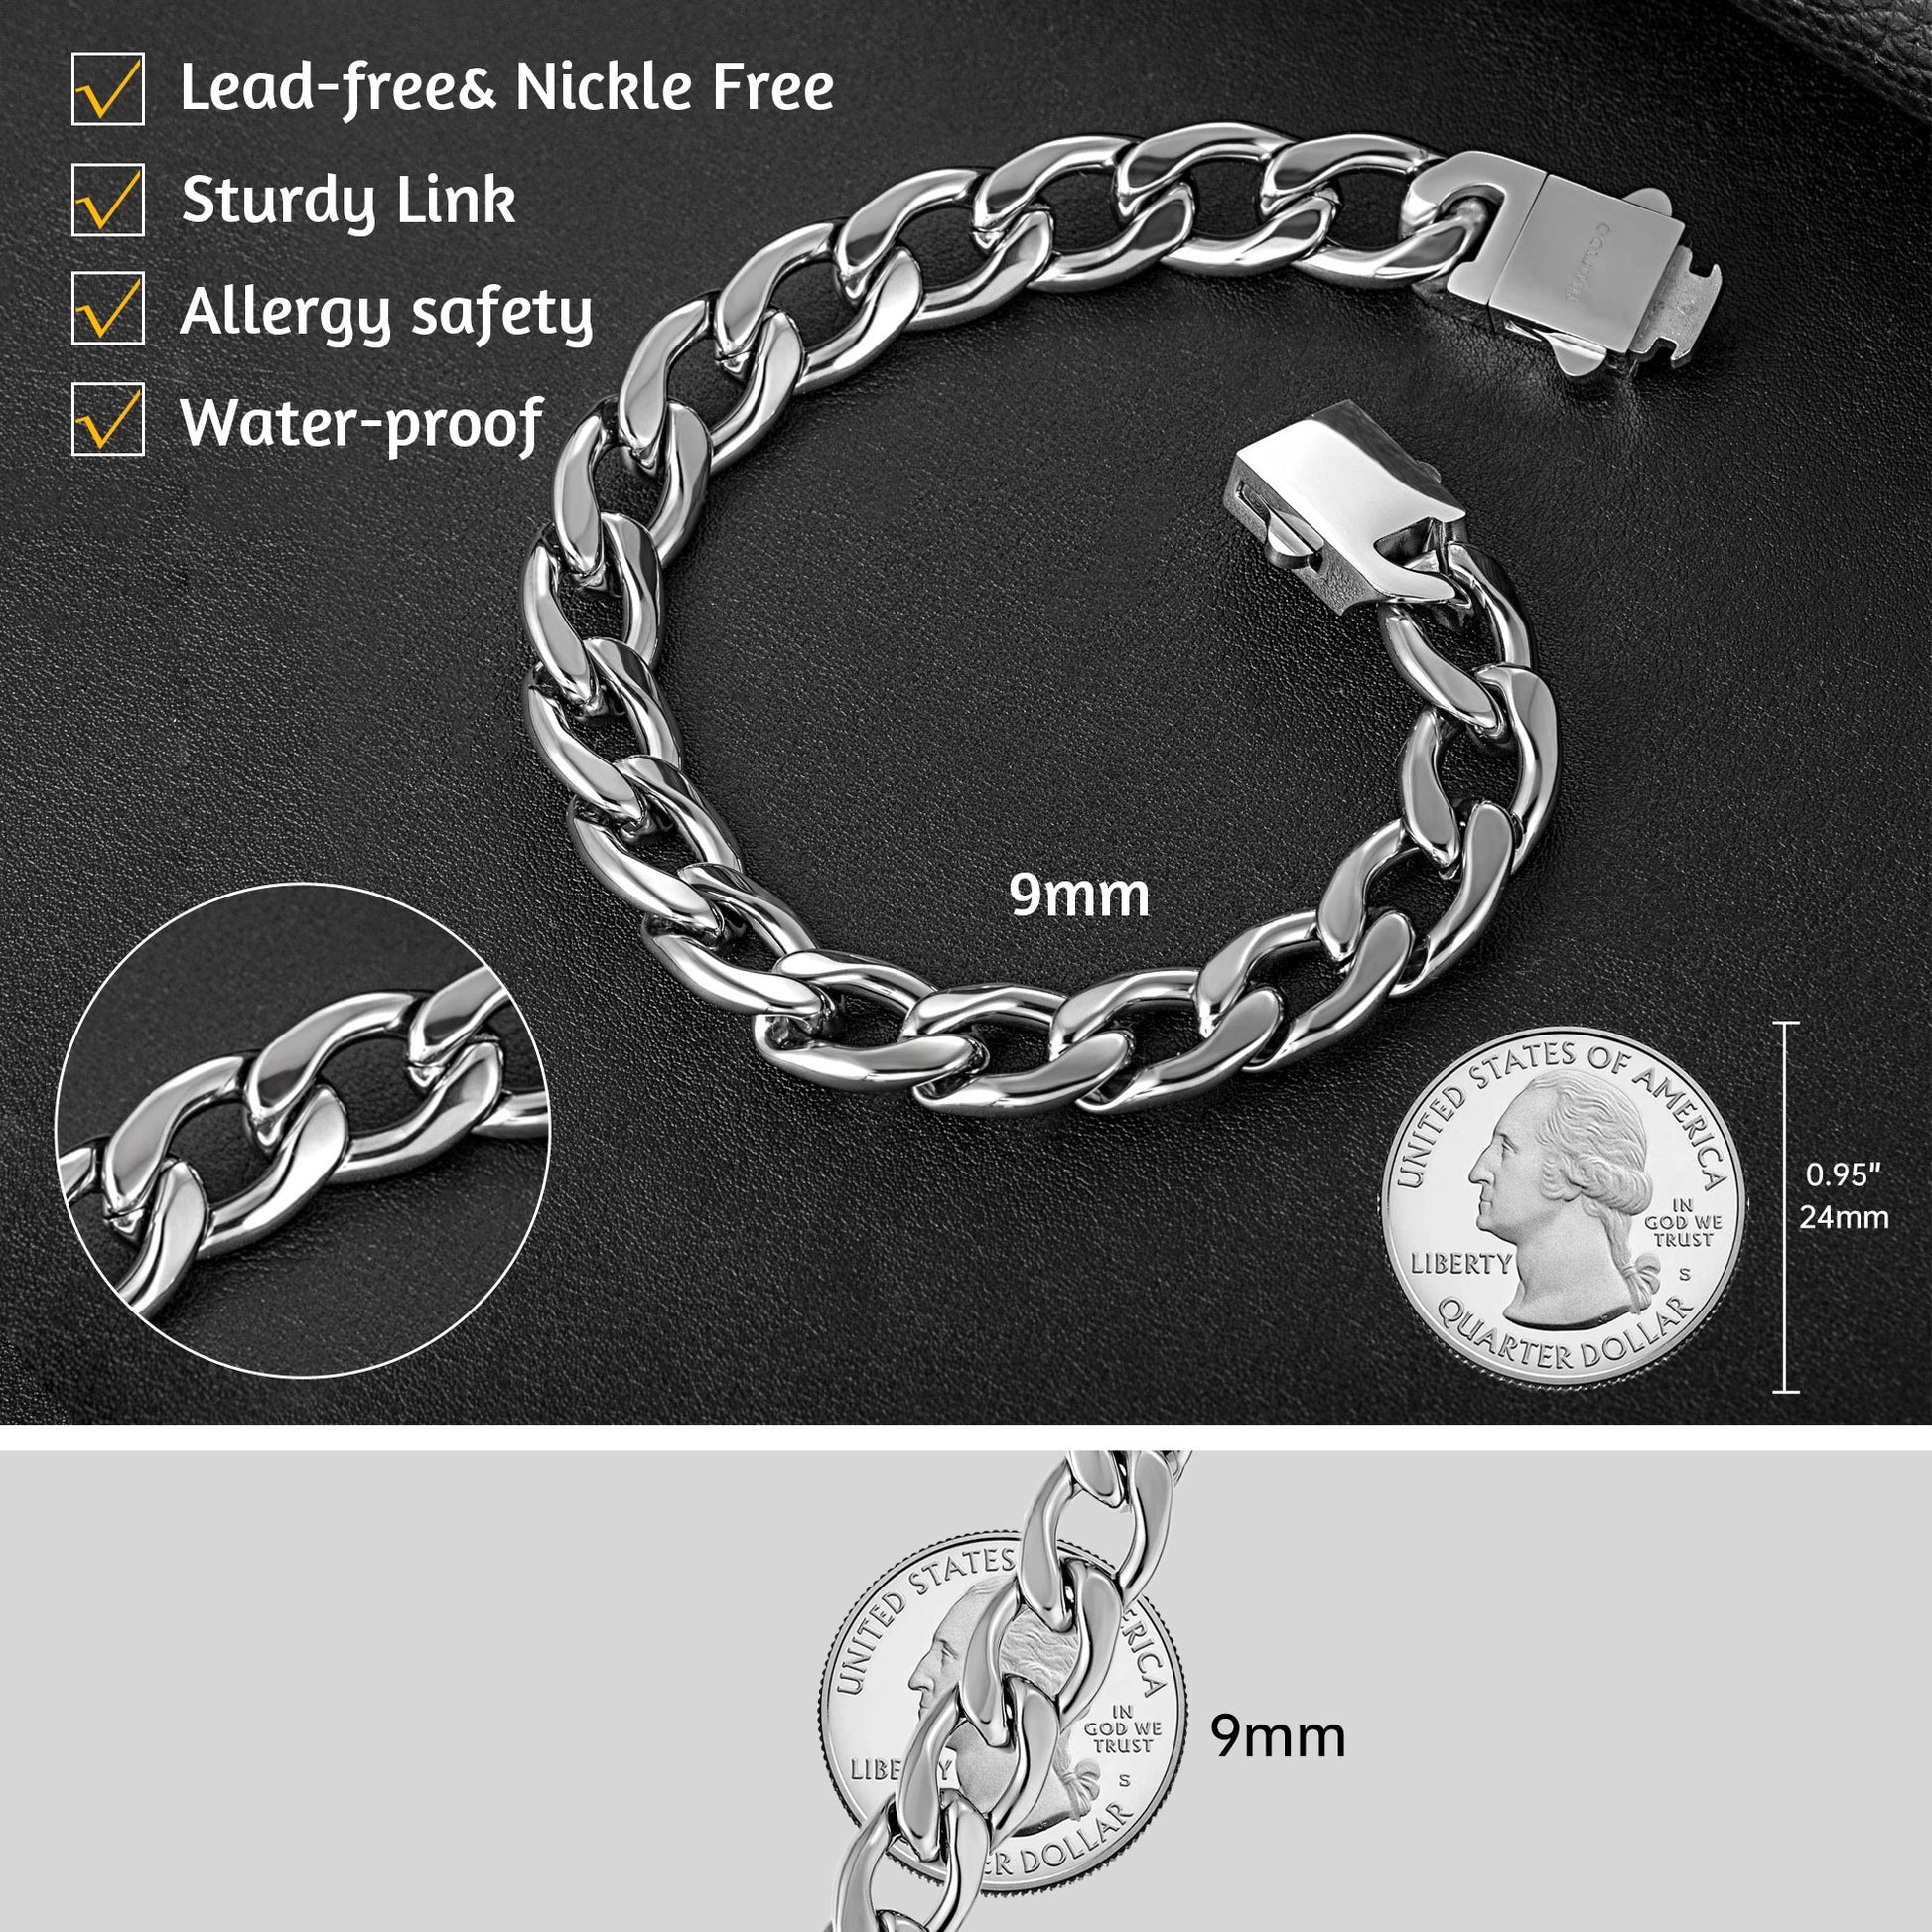 MD252 = Oval Steel Bracelet Mandrel 12'' Long by FDJtool